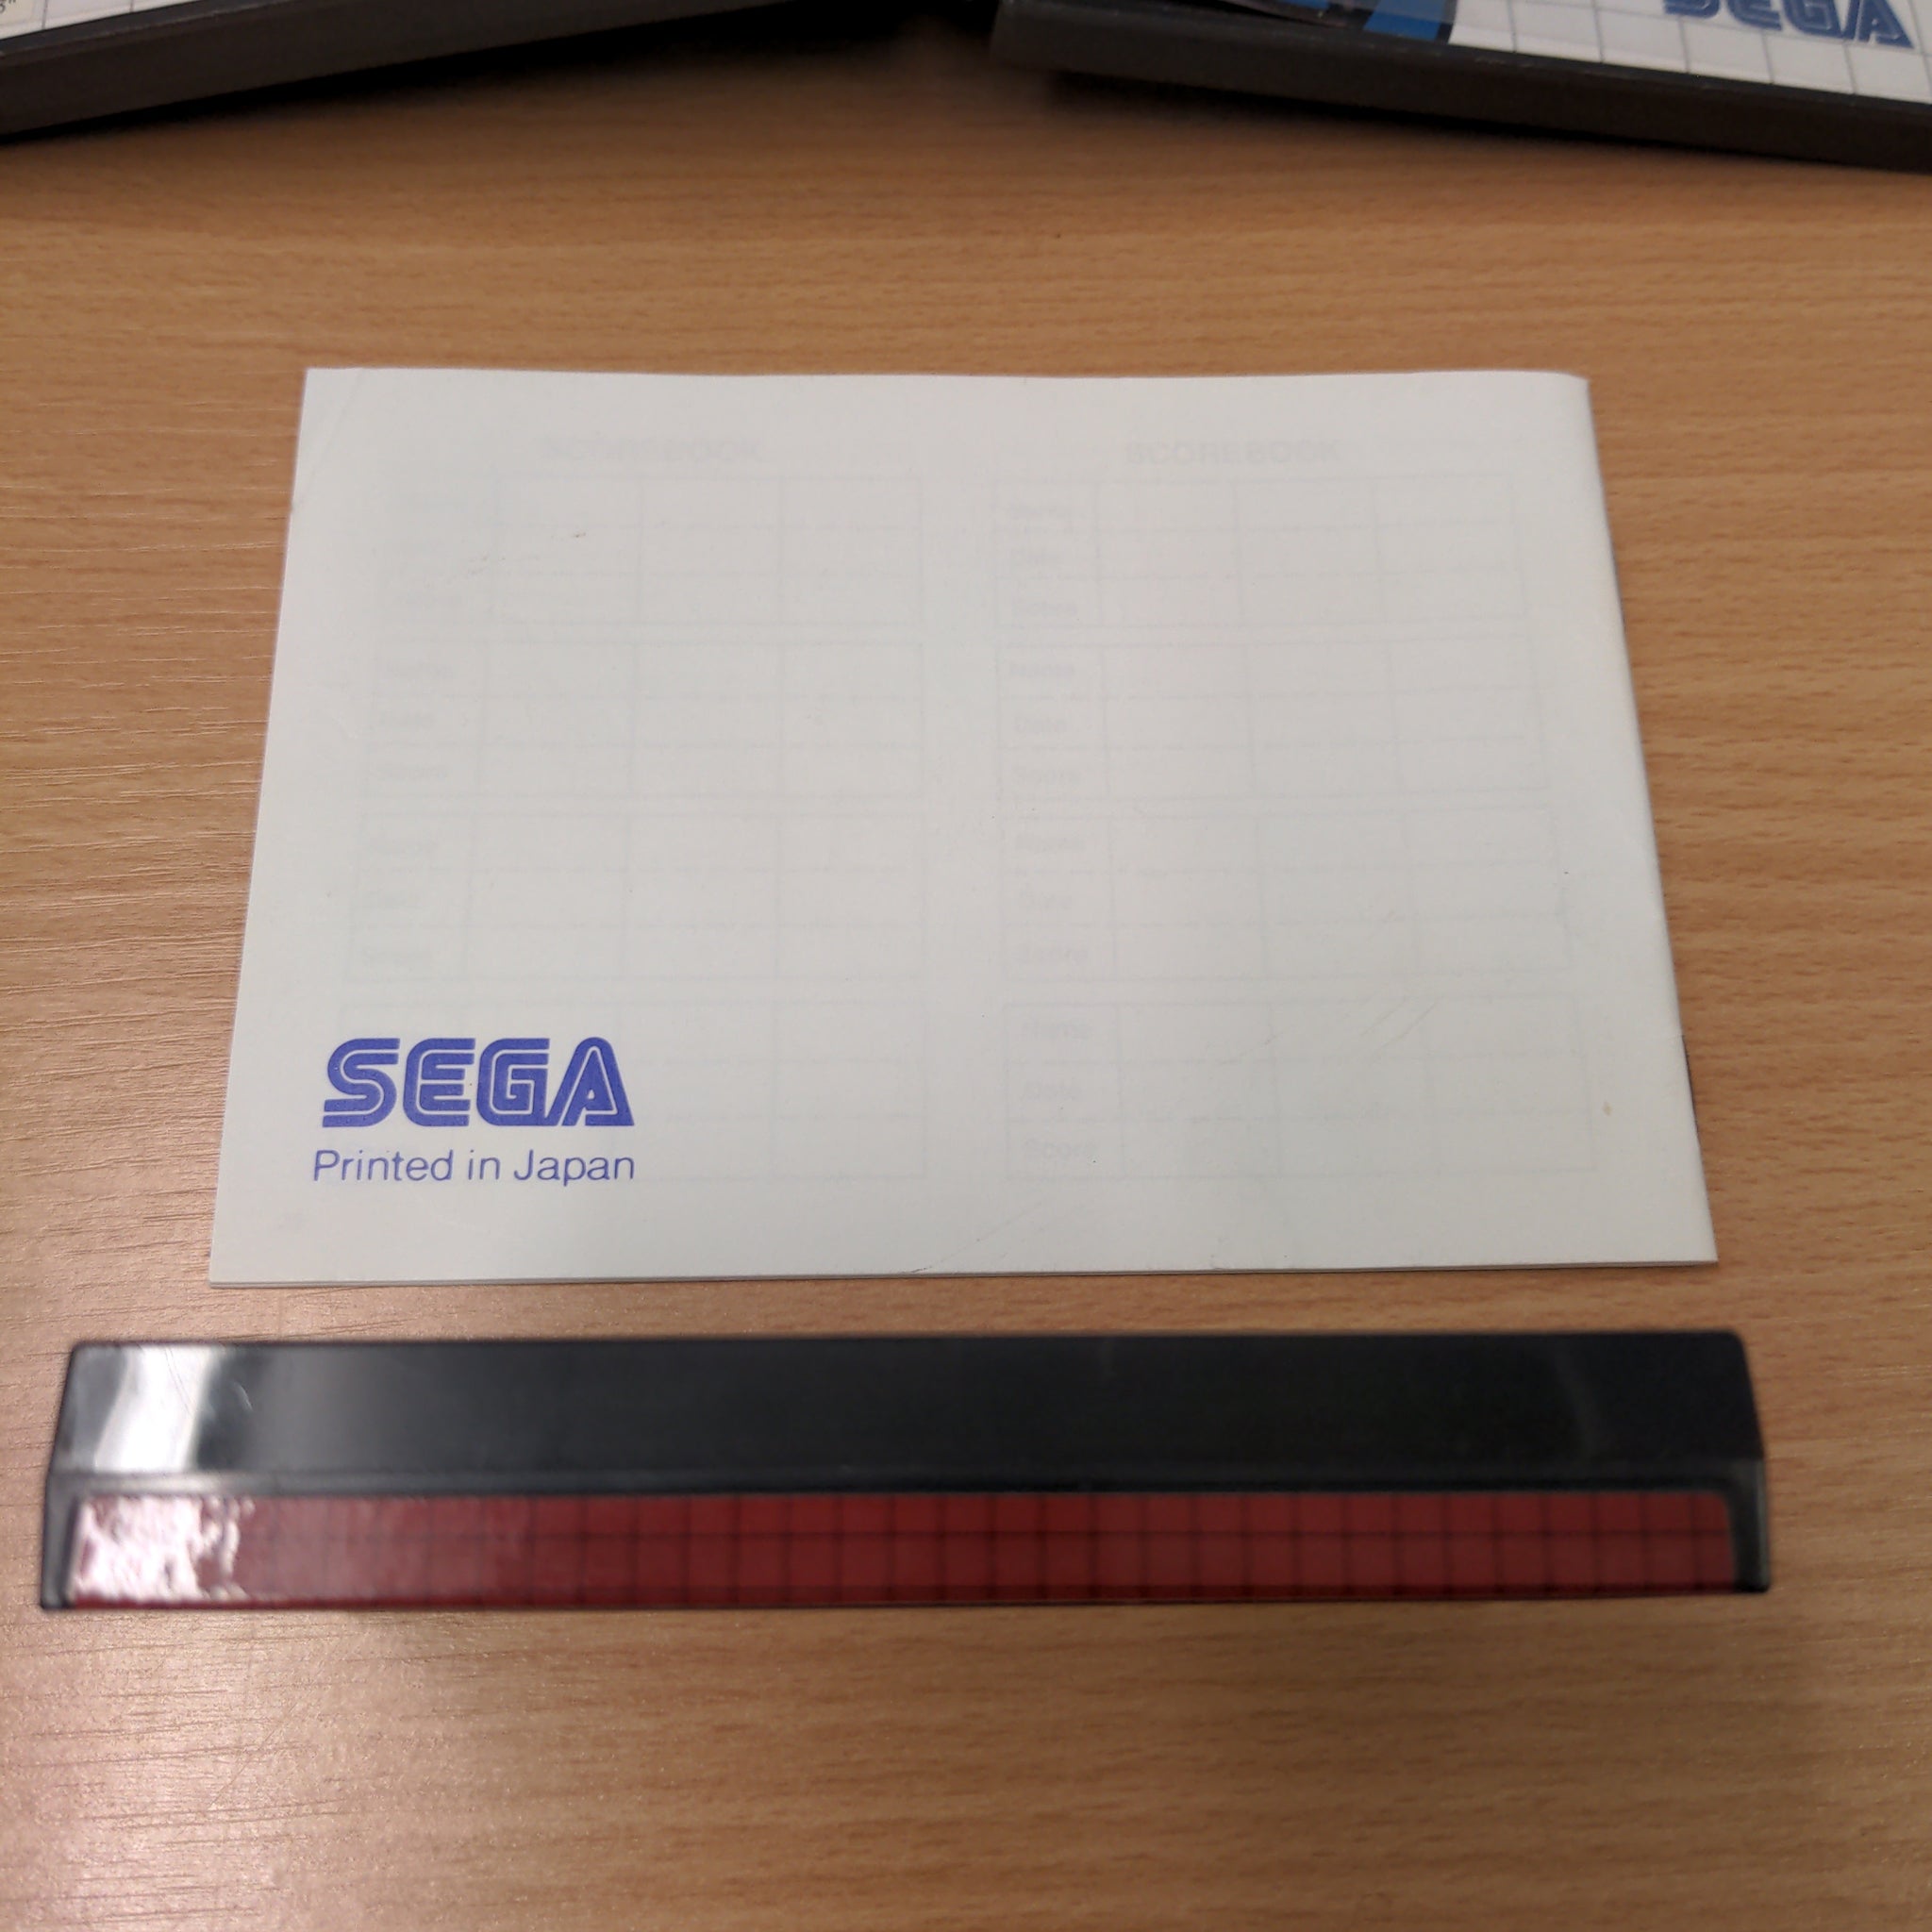 The Ninja Sega Master System game